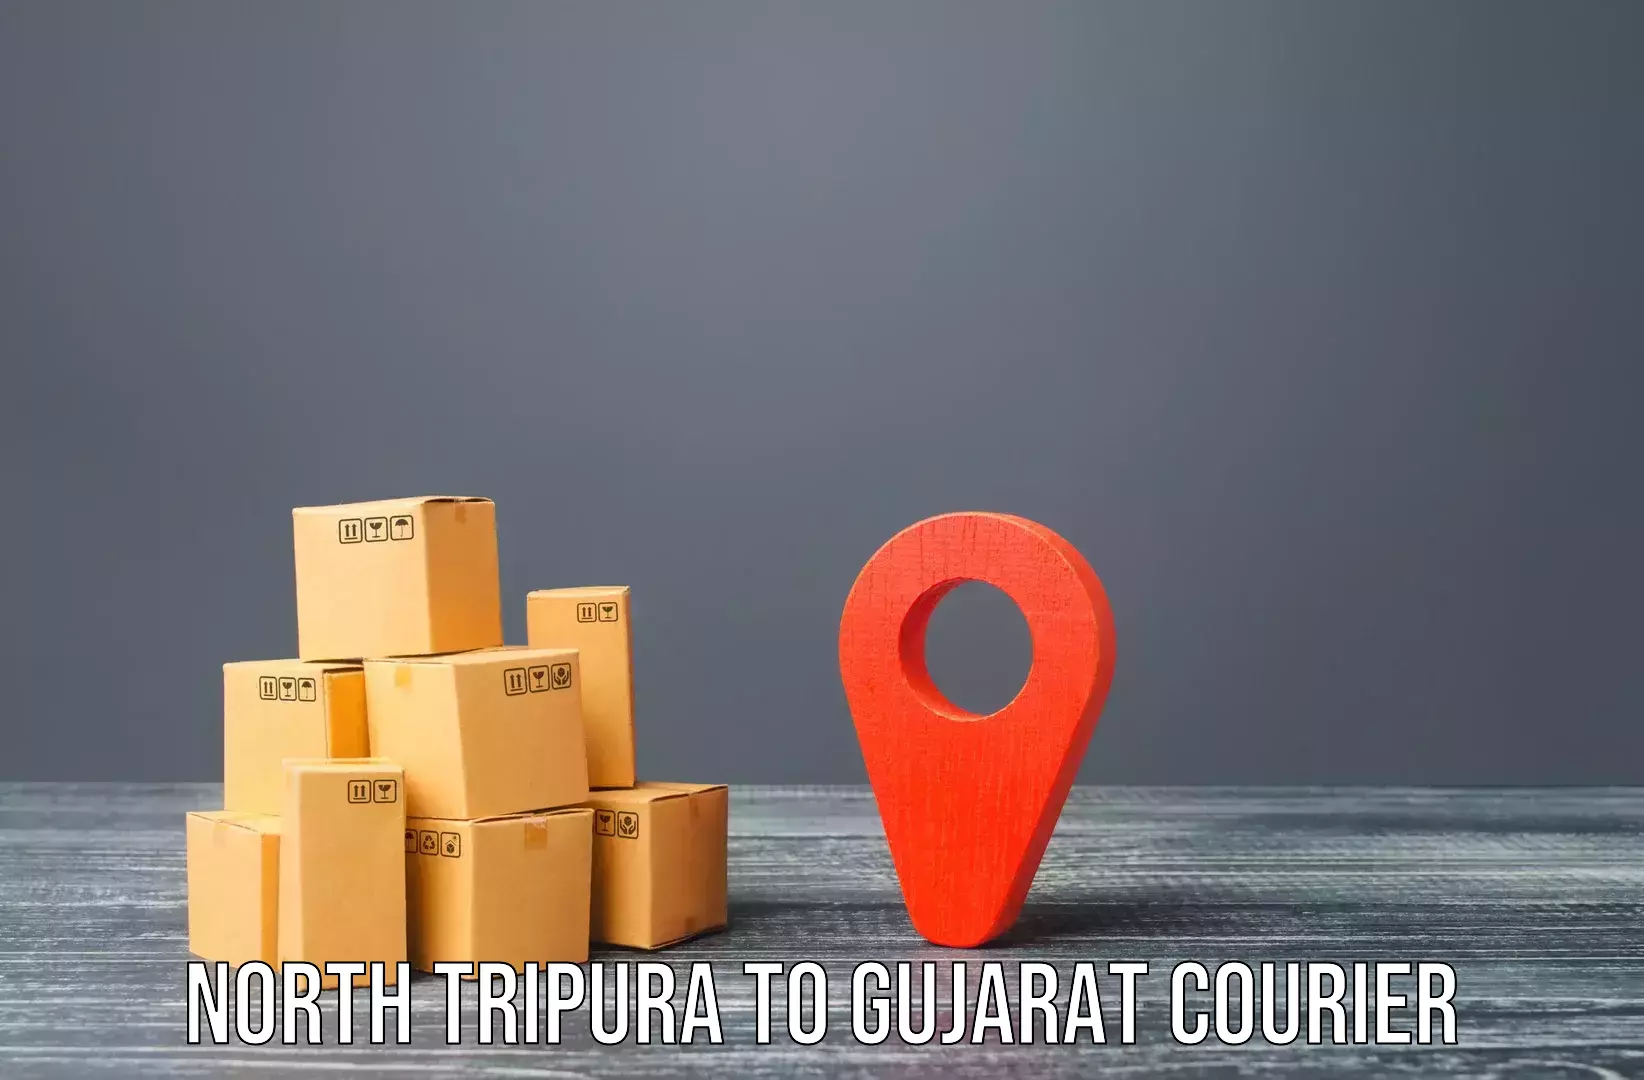 Furniture transport solutions North Tripura to Gandhidham